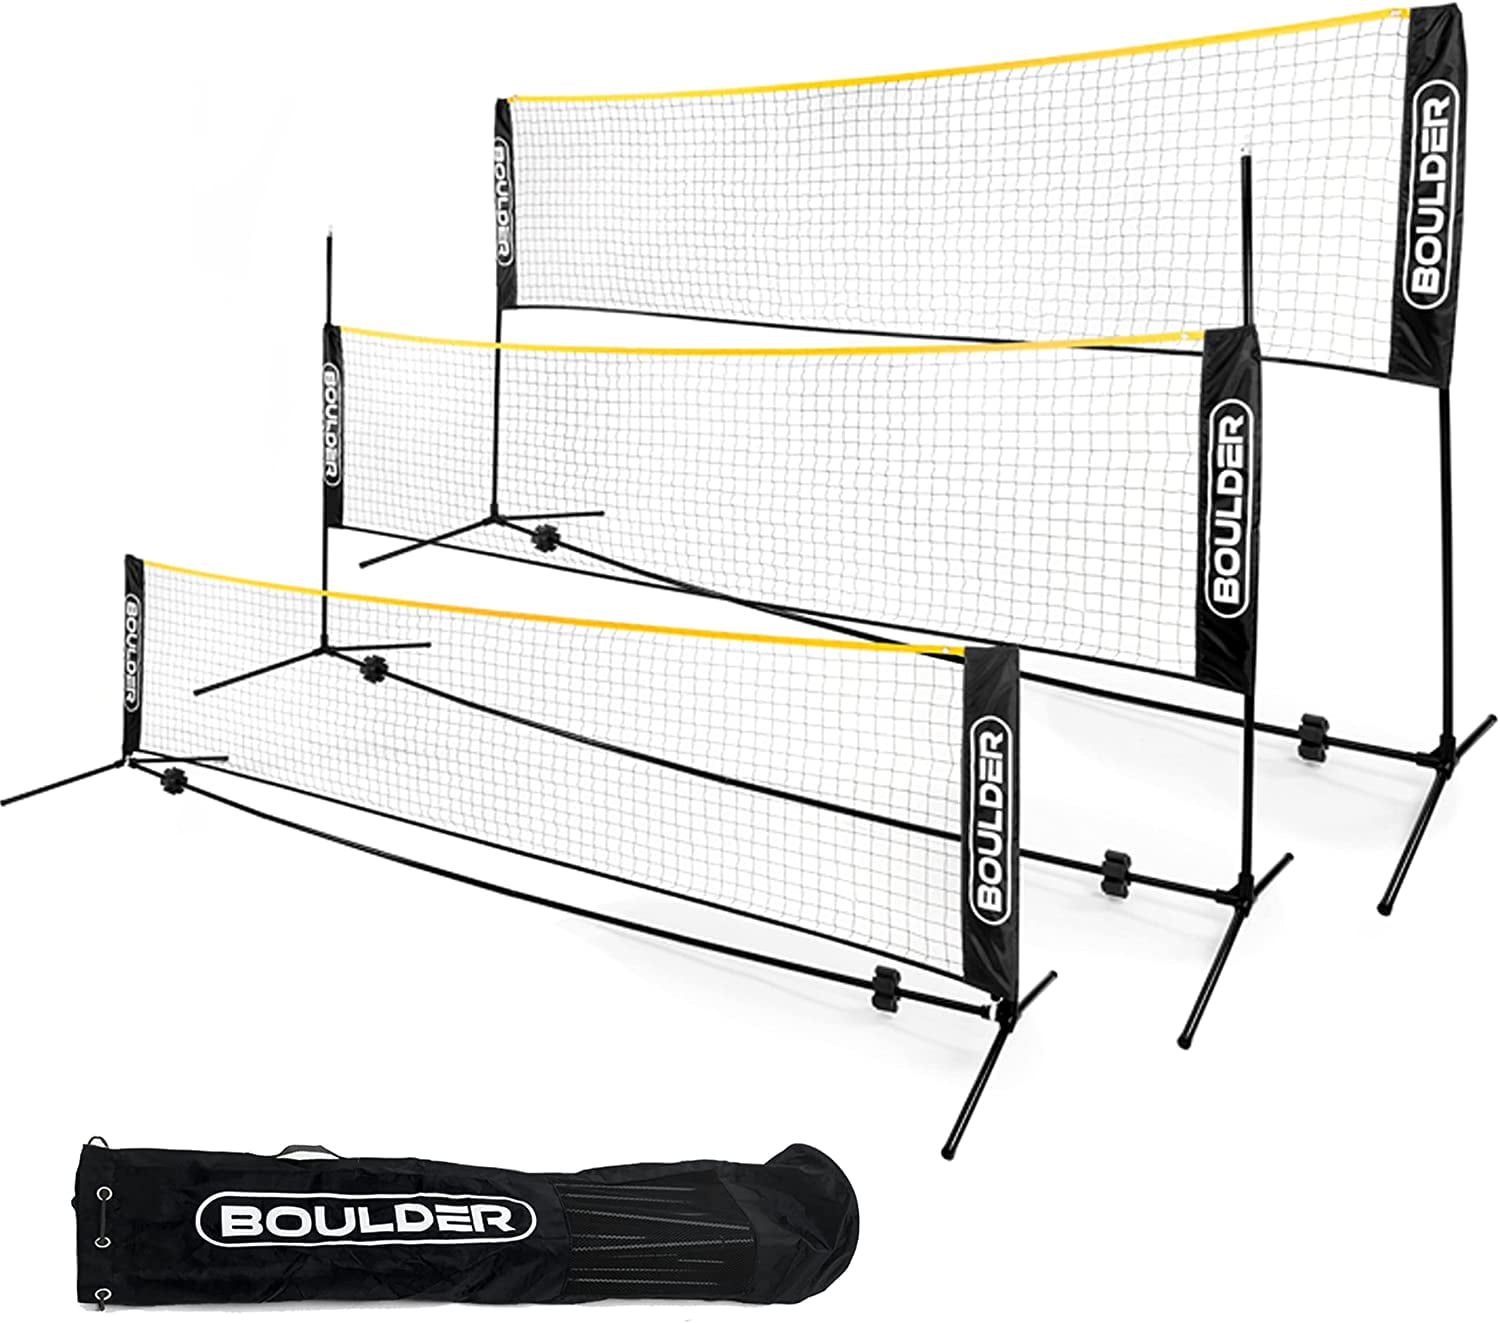 Badminton Tennis Volleyball Net For Beach Garden Indoor Outdoor Games 8C 